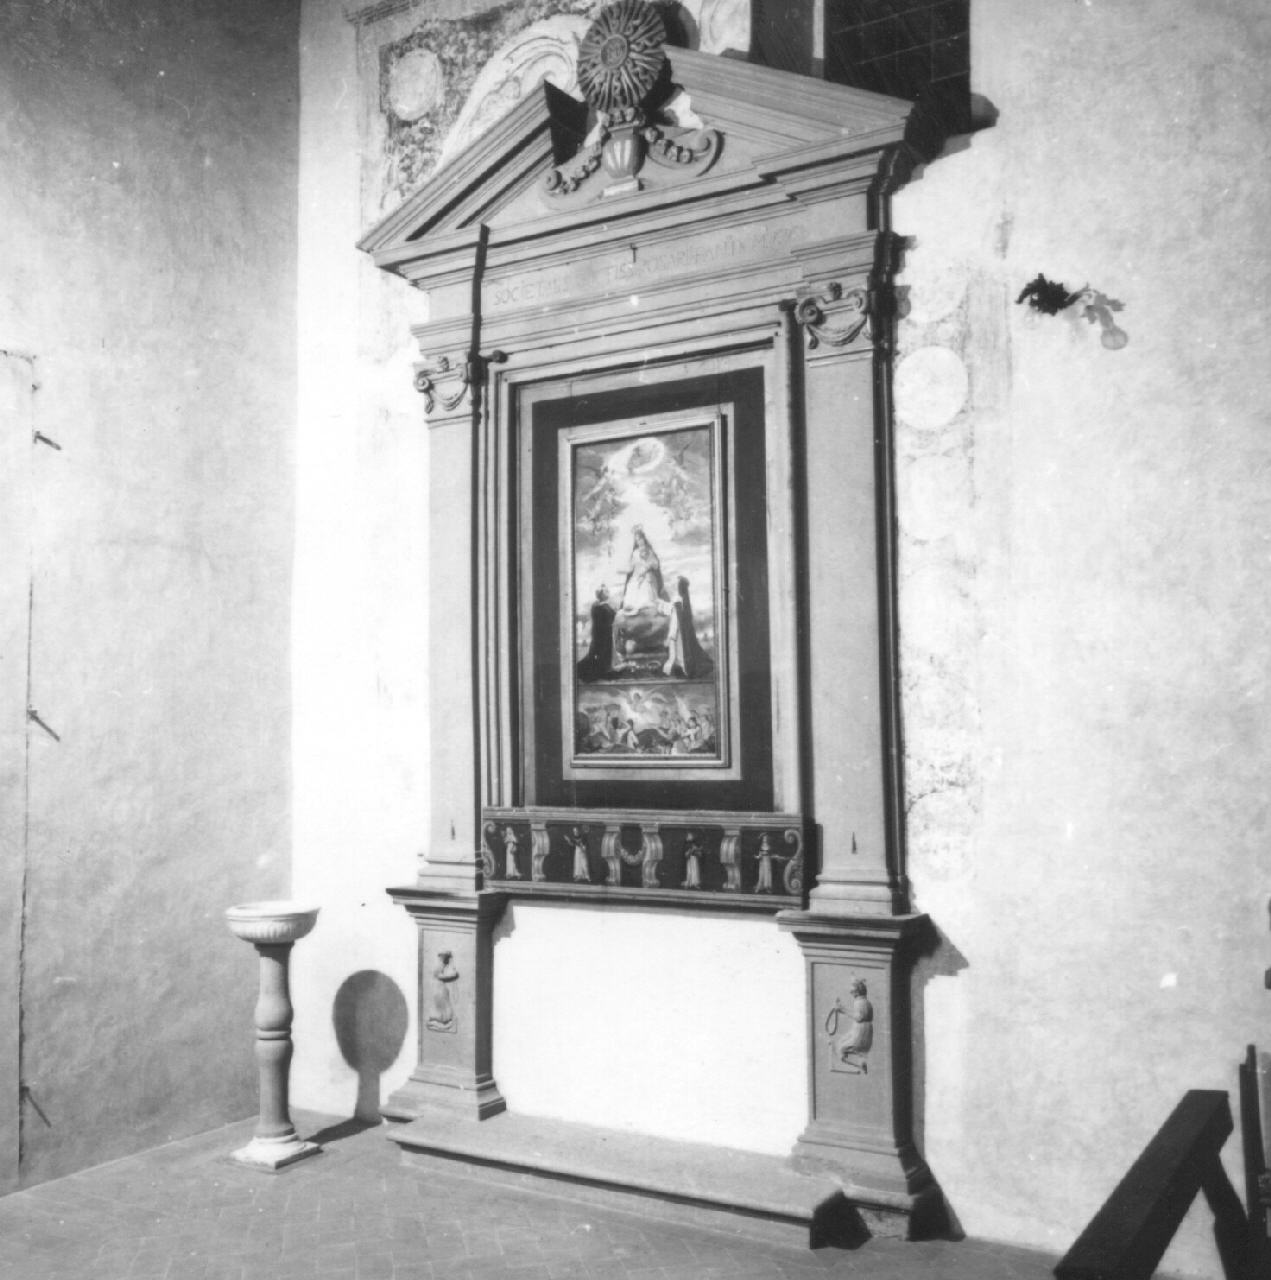 altare - manifattura fiorentina (sec. XVII)